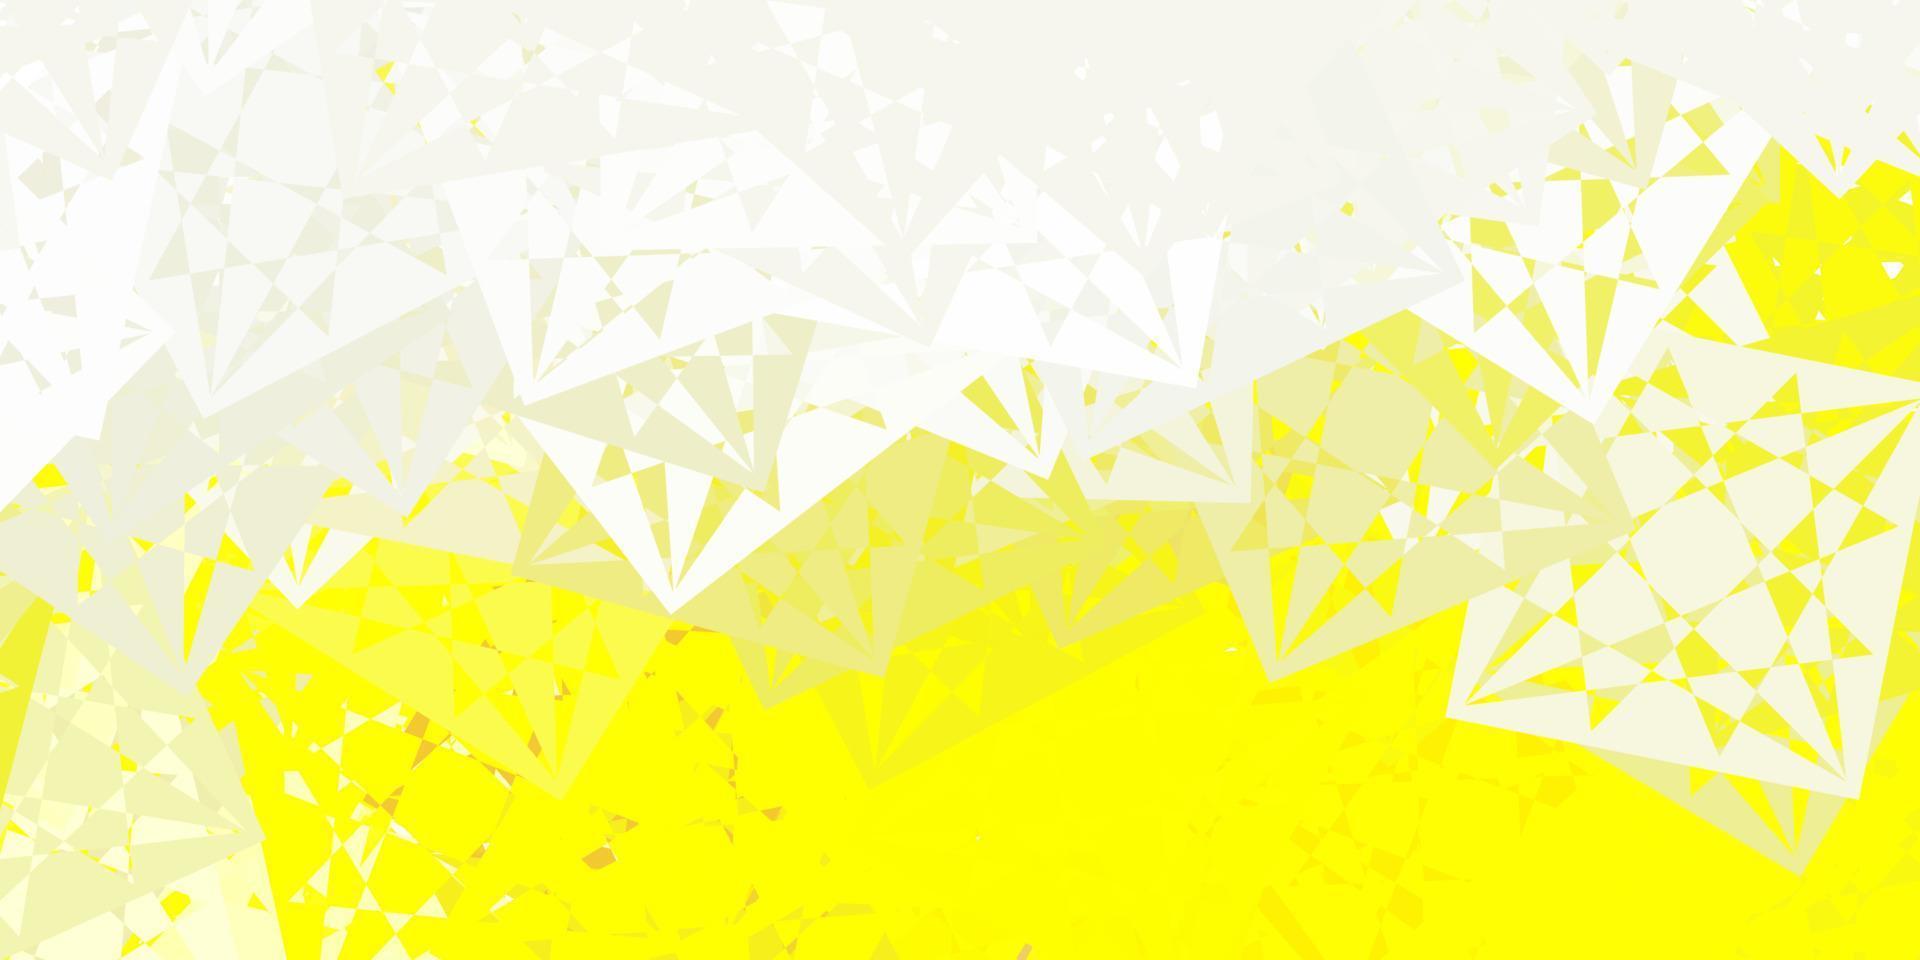 layout vettoriale giallo chiaro con forme triangolari.